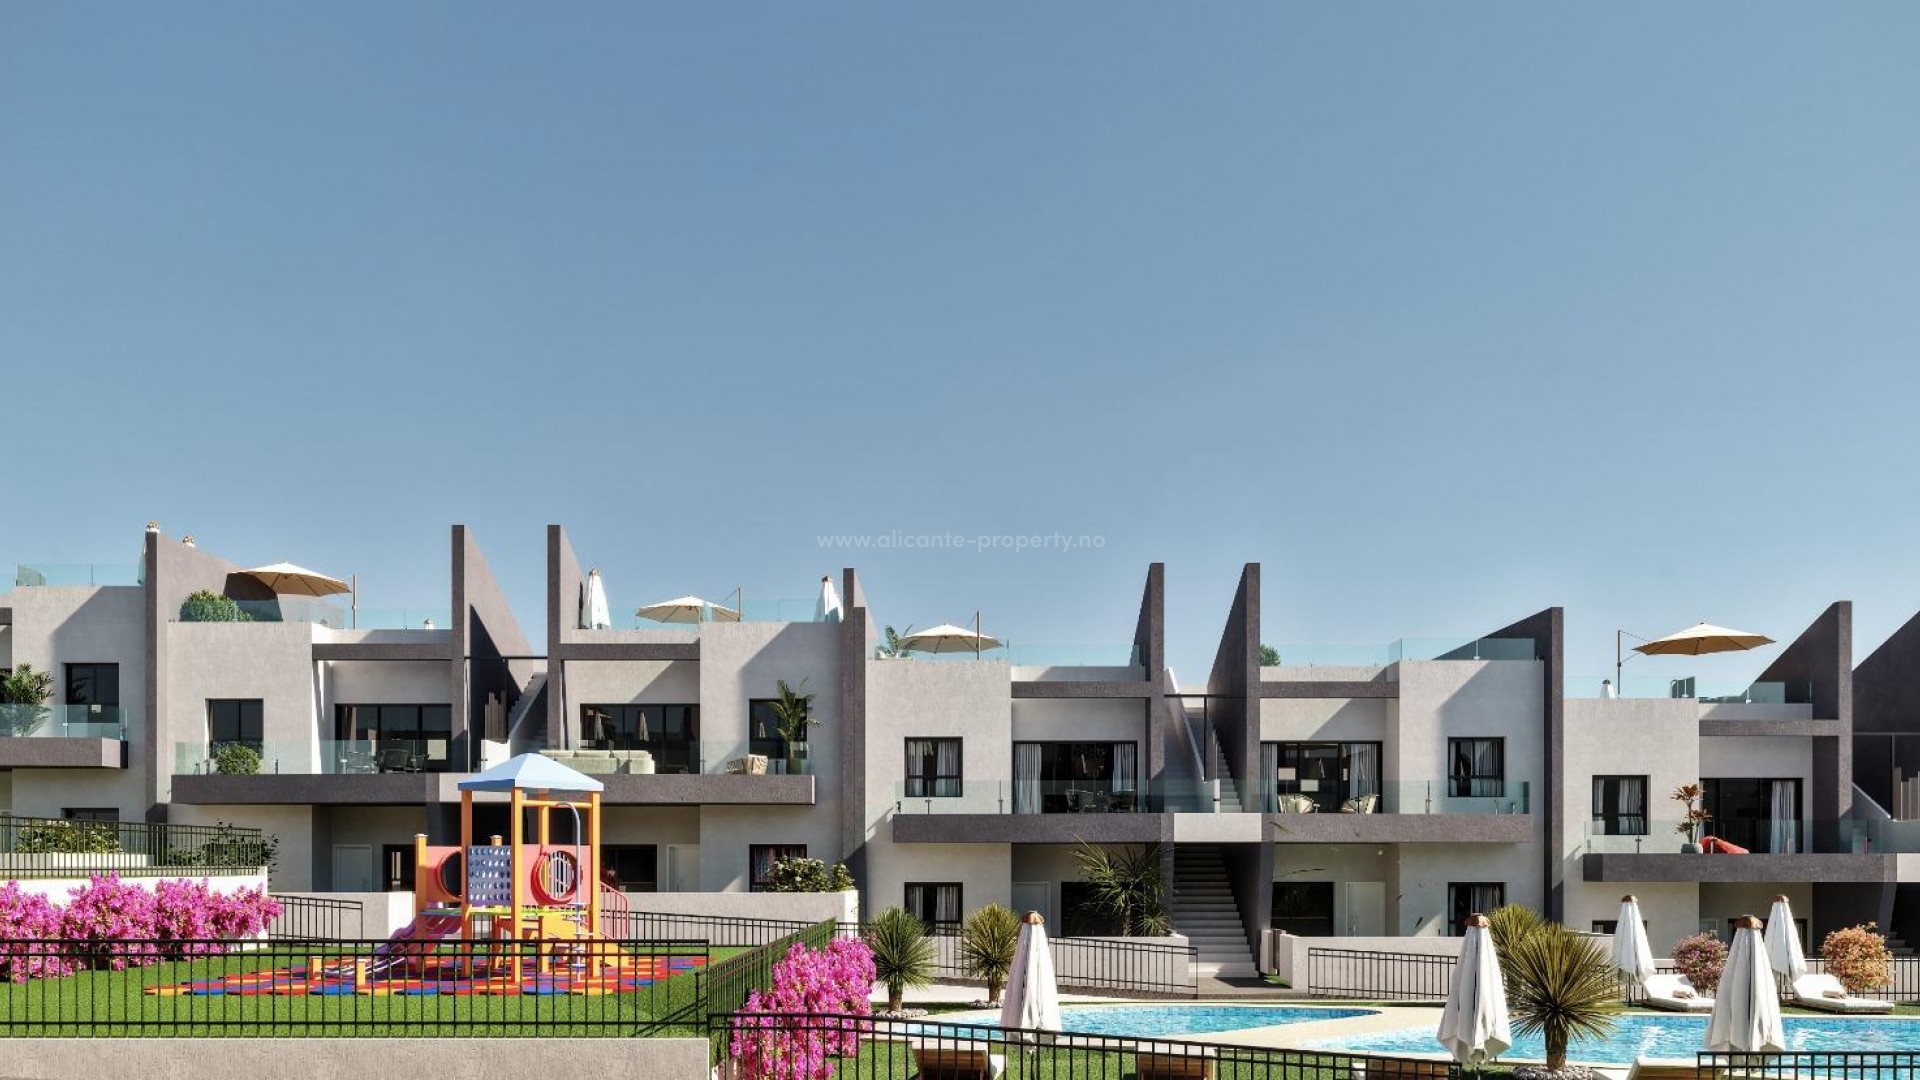 Bungalower/leiligheter i San Miguel del Salinas nær Torrevieja, 2 og 3 soverom, hage eller solarium. Inngjerdet med felles svømmebassenger og lekeplass